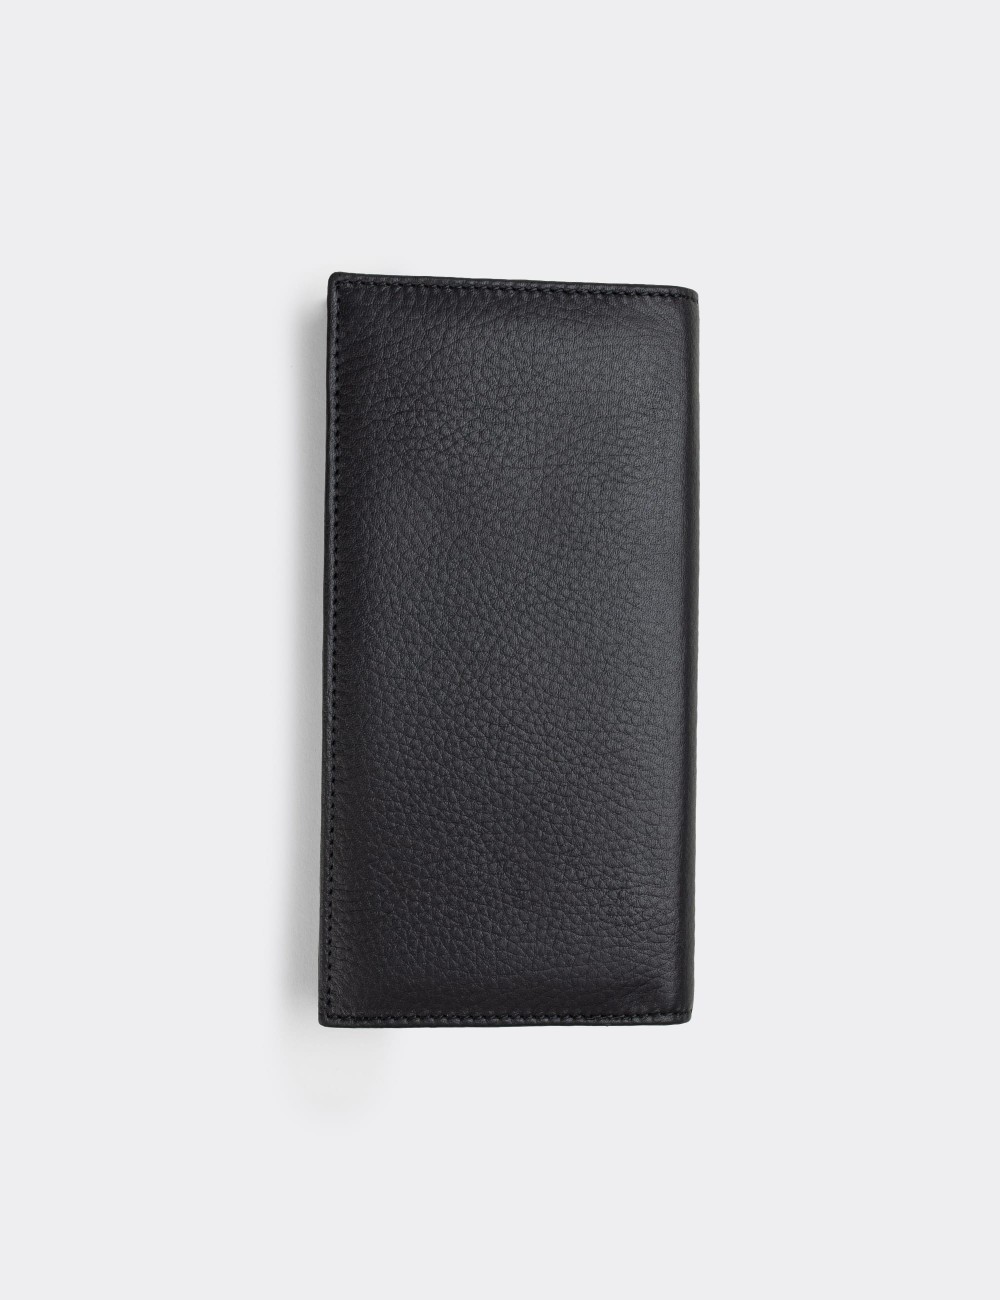  Leather Black Men's Wallet - 00895MSYHZ01